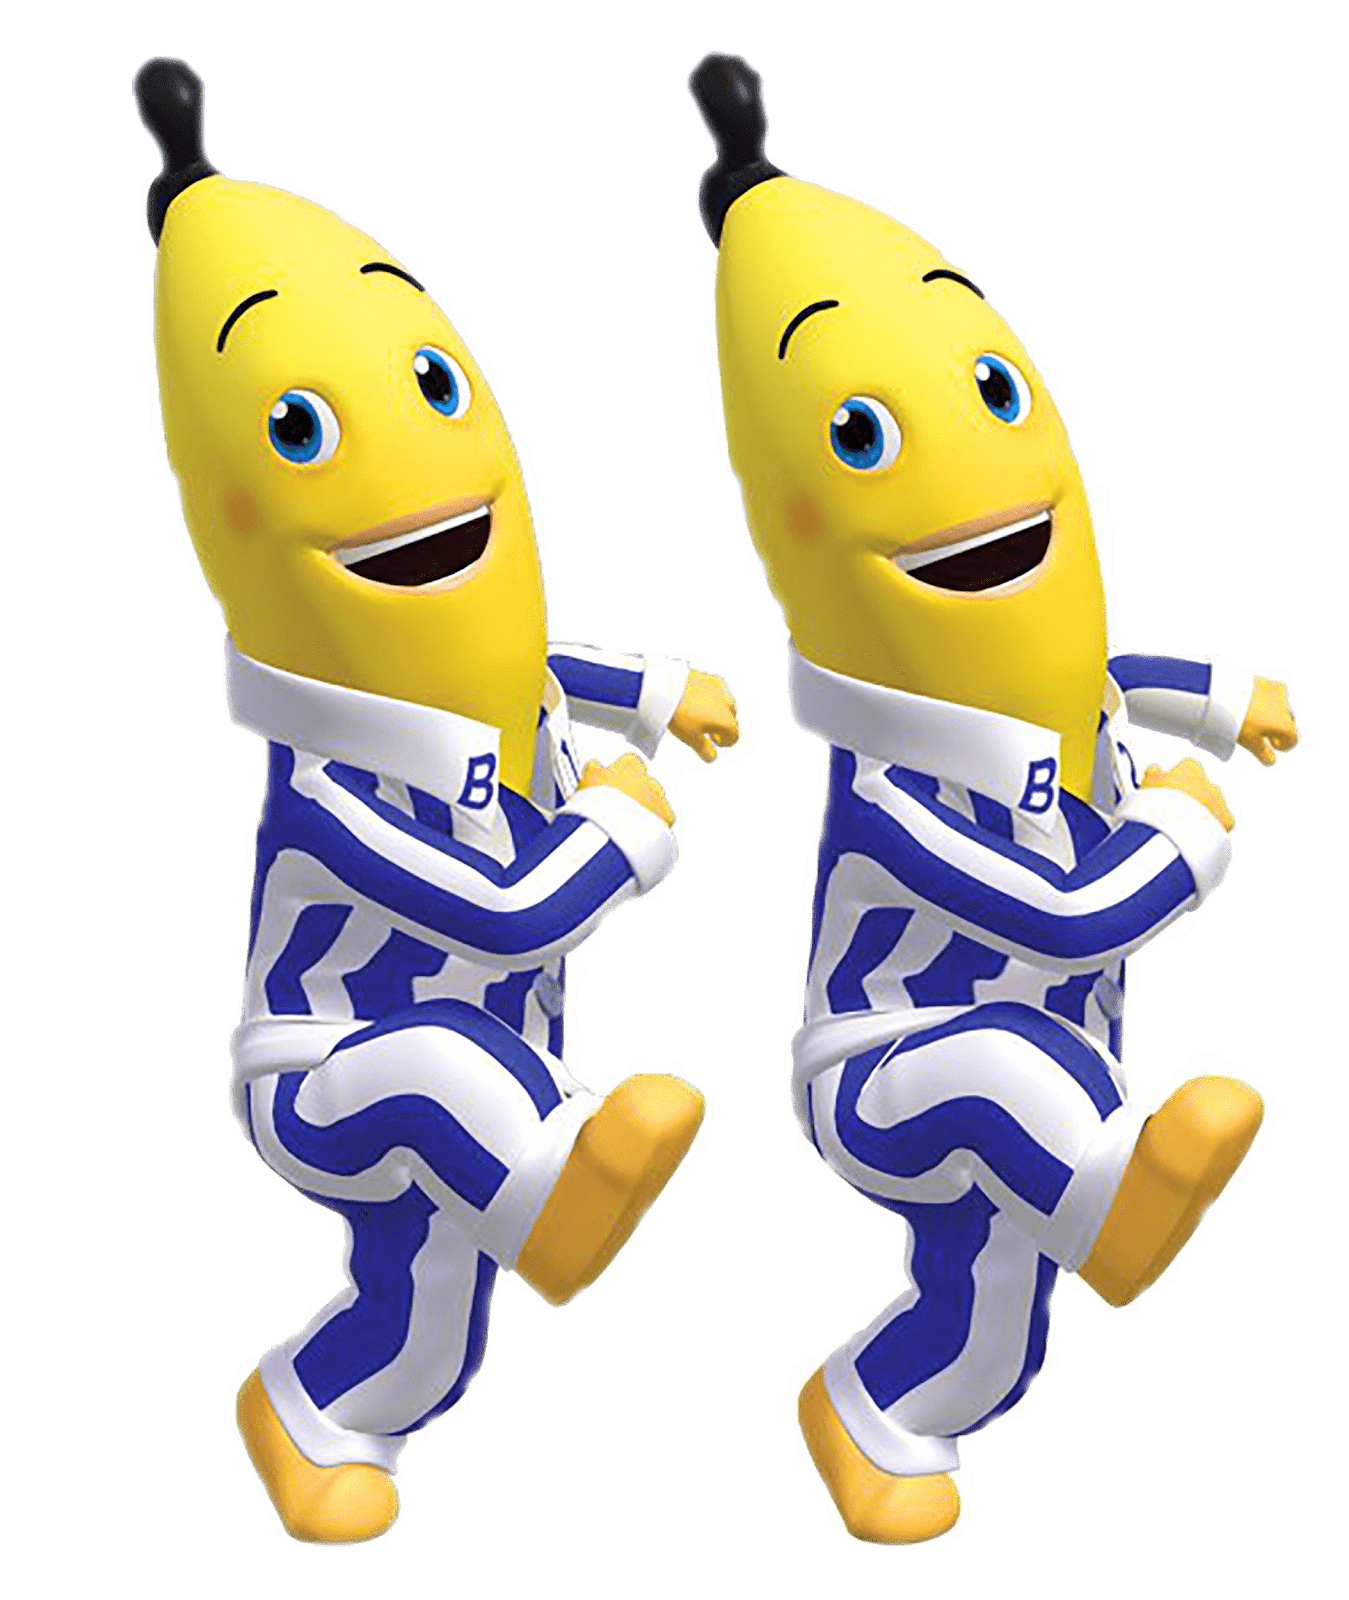 imagen Gigante de los personajes de Banana en Pijamas   en png con fondo transparente